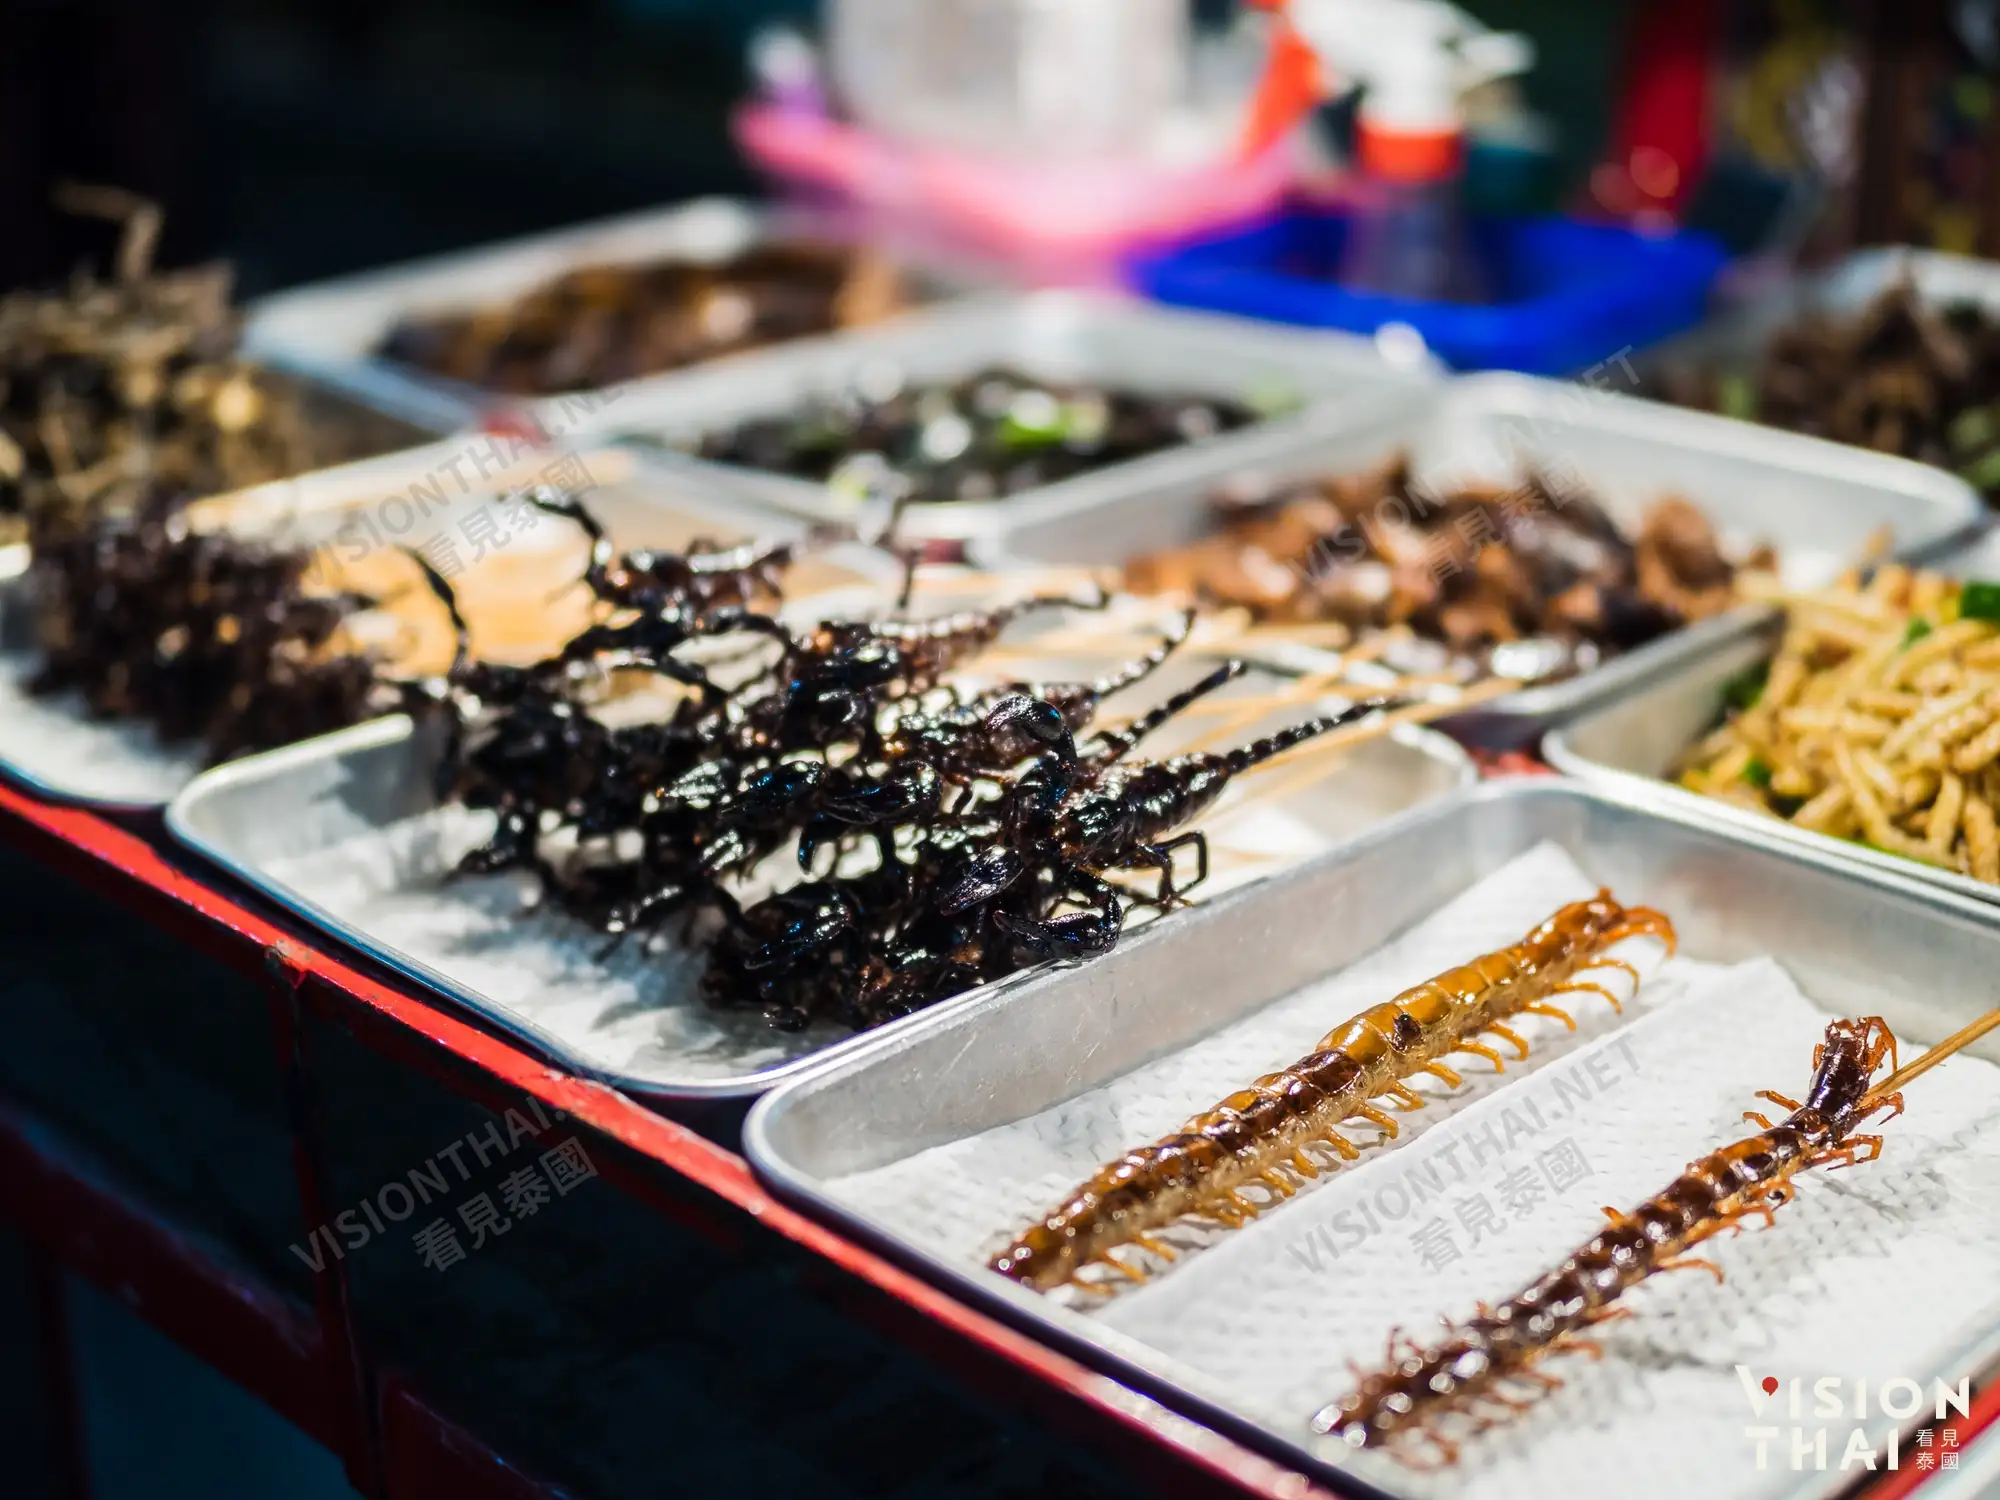 泰國盛產各類昆蟲，昆蟲本身含有大量蛋白質，經油炸後成為了一道美味的小吃（VISION THAI 看見泰國）